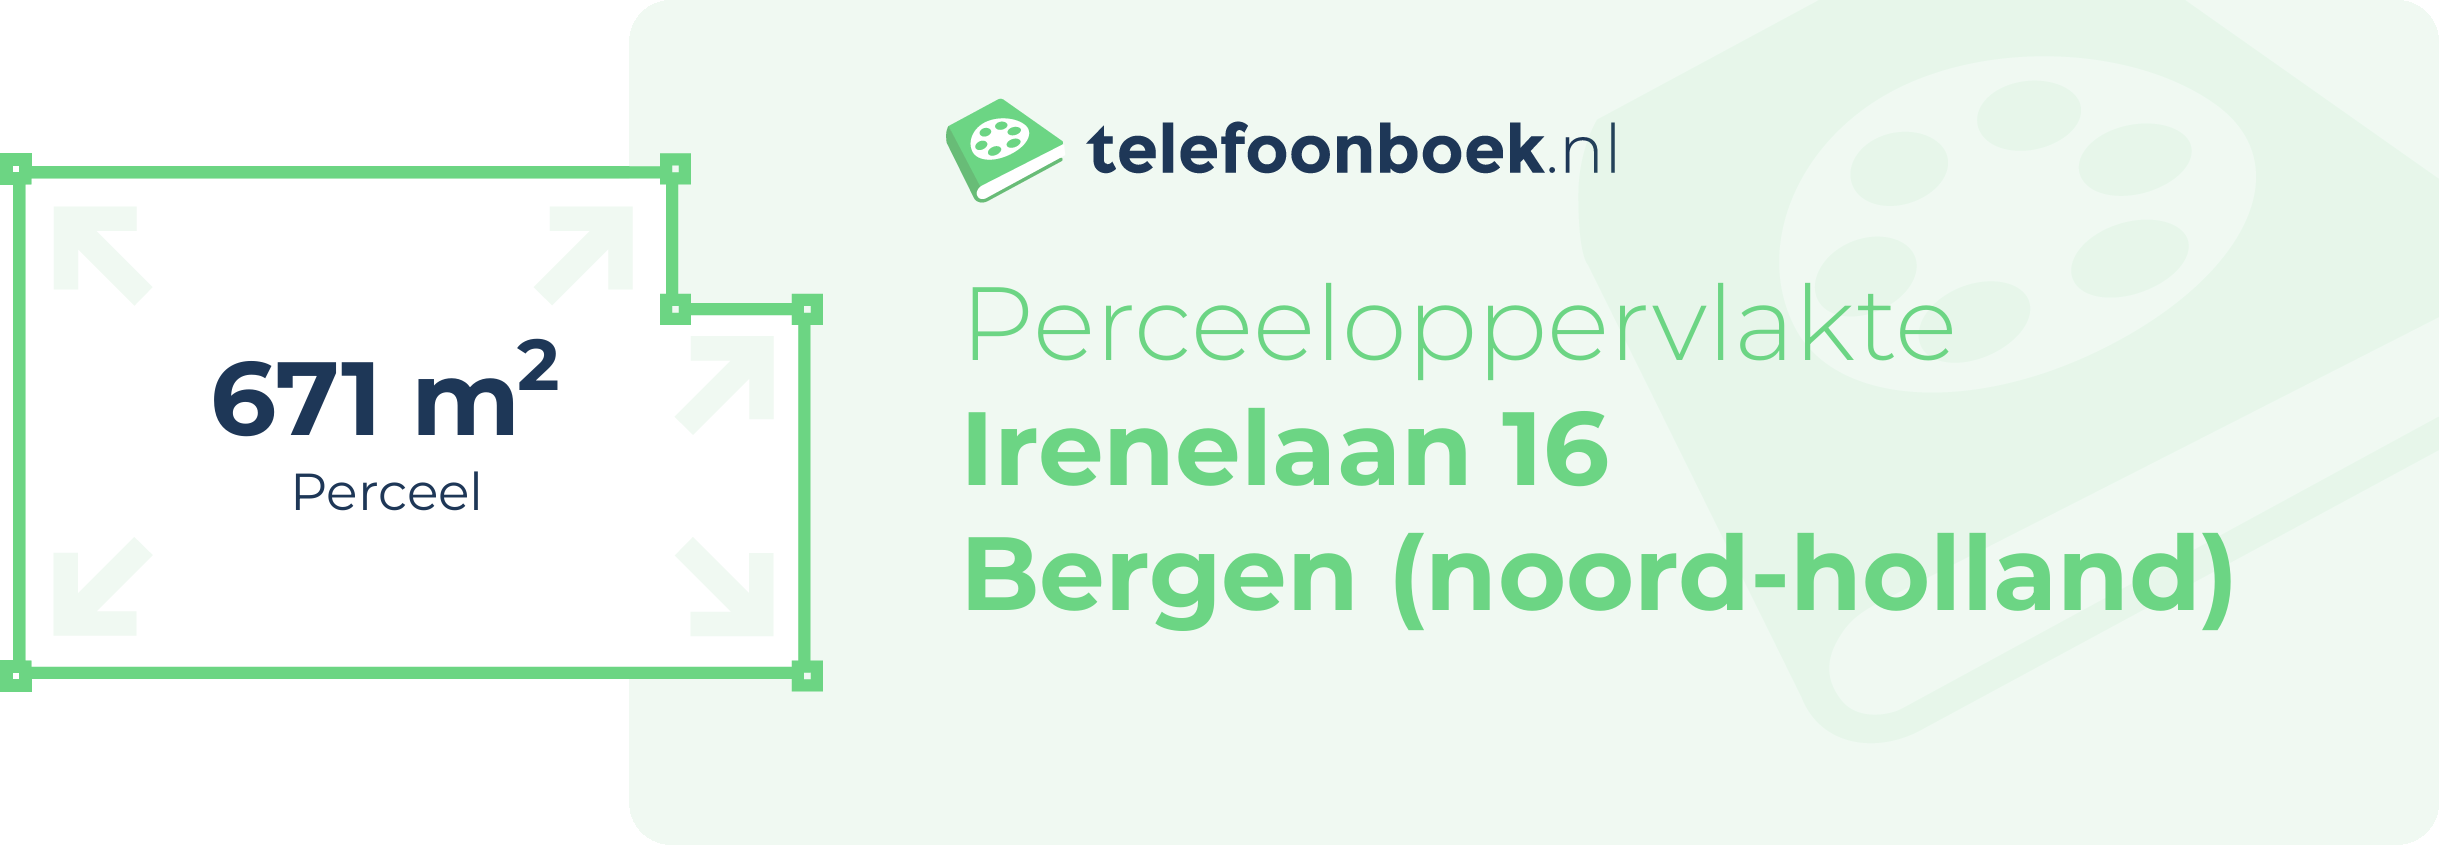 Perceeloppervlakte Irenelaan 16 Bergen (Noord-Holland)